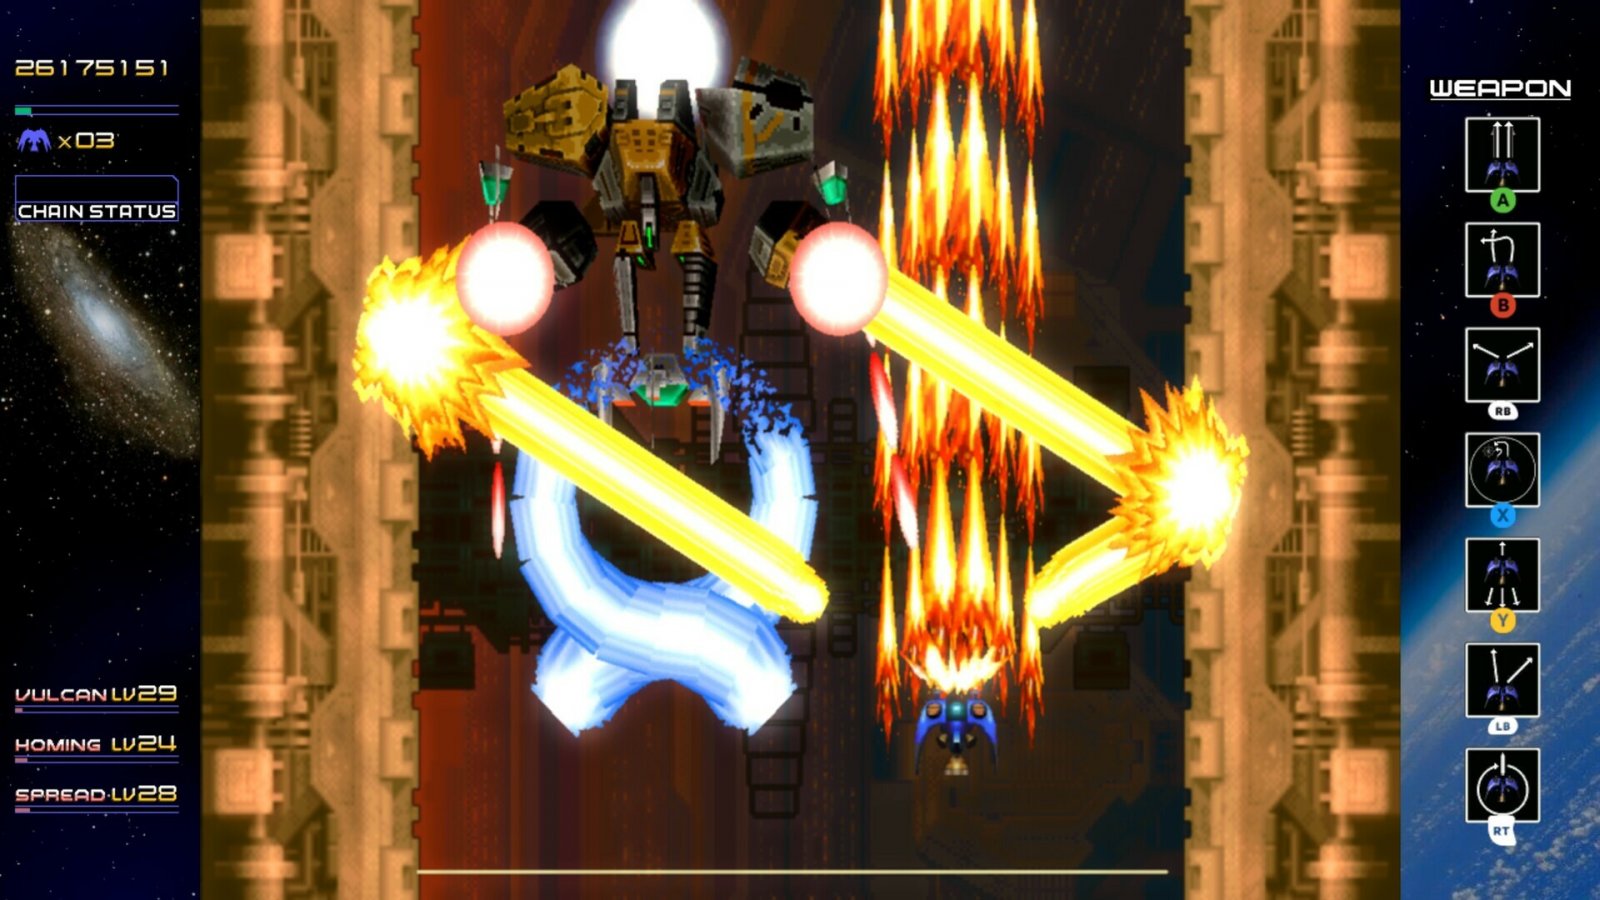 Radiant Silvergun: disponibile anche per PC il capolavoro di Treasure